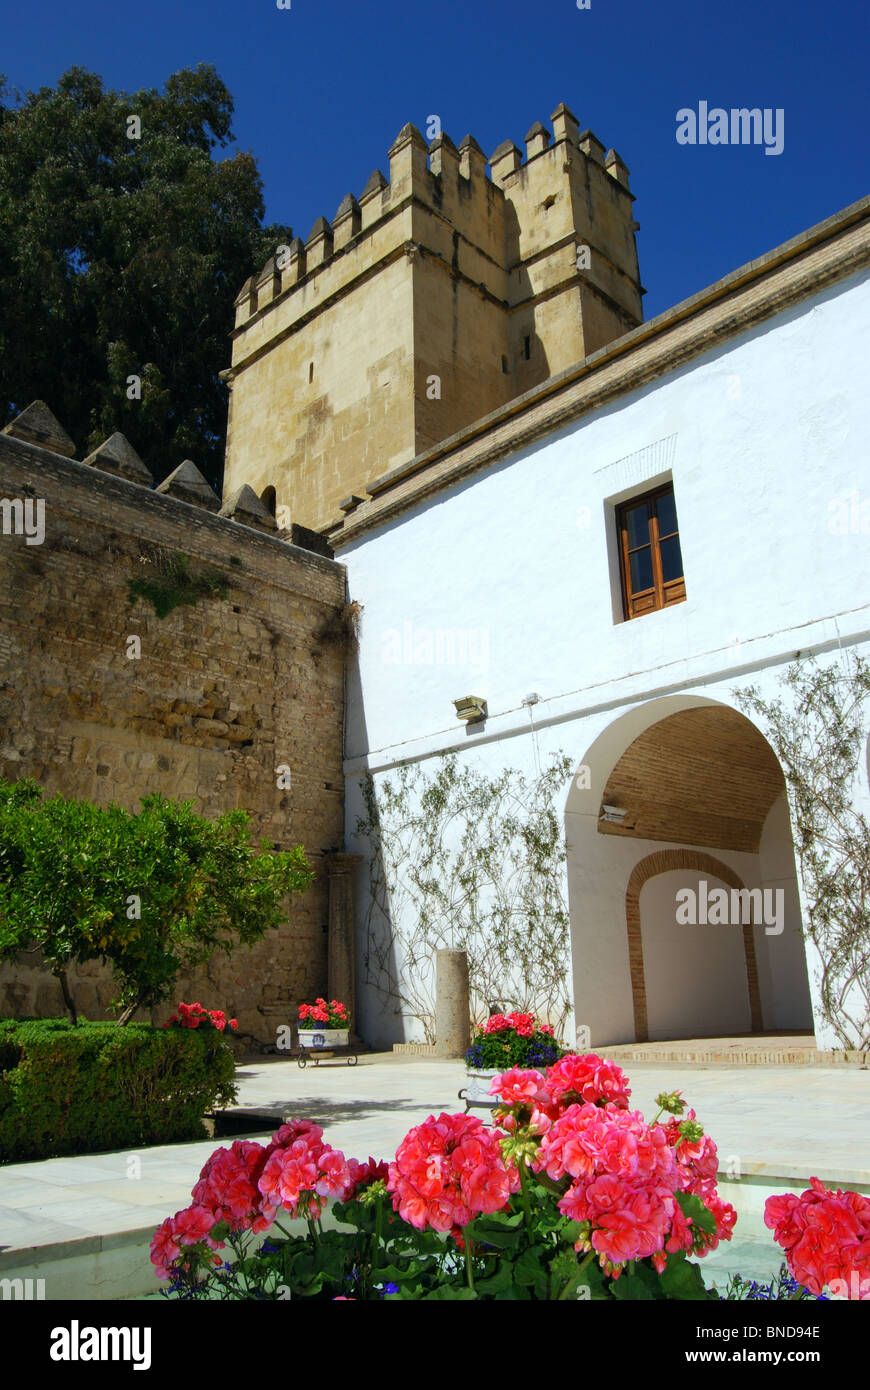 Palace Forteresse des Rois Chrétiens - Cour dans le parc du château, Córdoba, Cordoue, Andalousie, province de l'Espagne, l'Europe. Banque D'Images